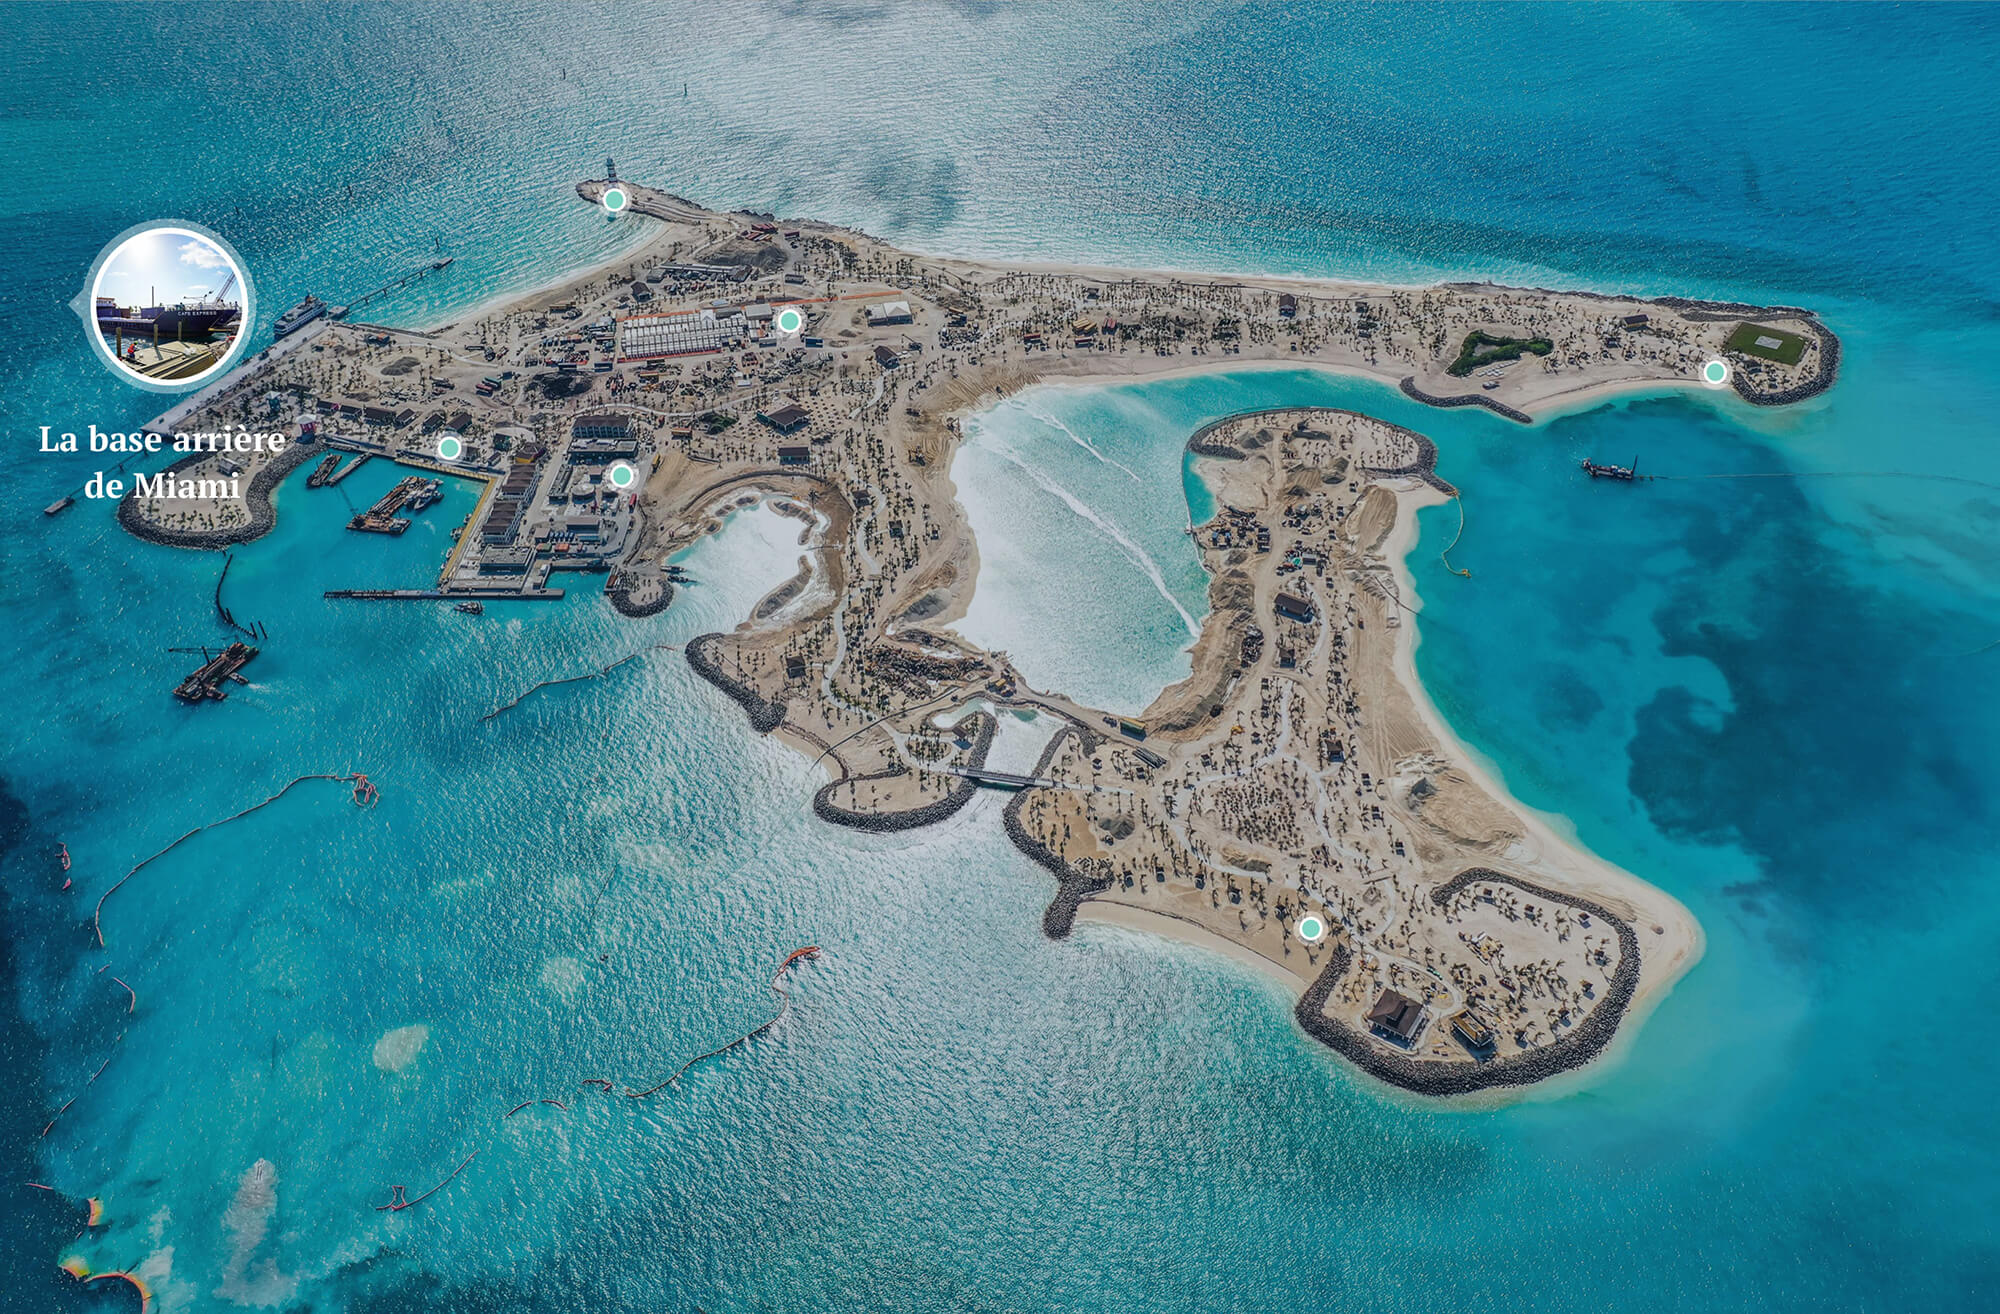 ocean cay - focus on the bahamas | bouygues magazine